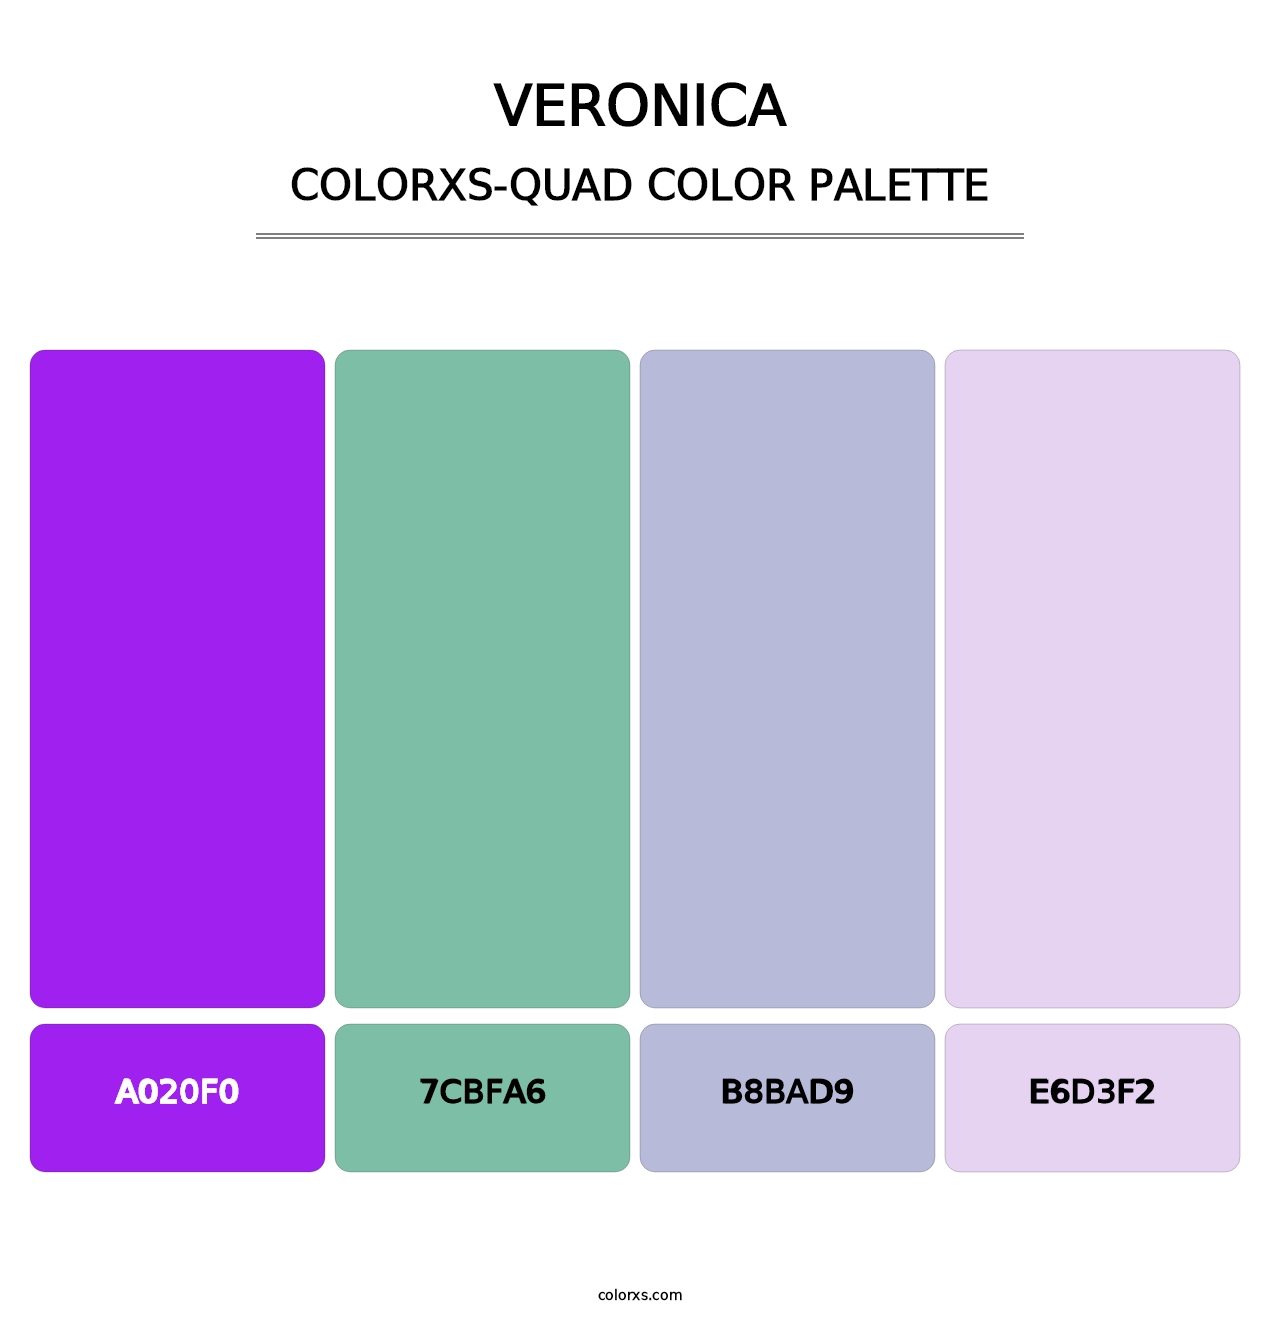 Veronica - Colorxs Quad Palette